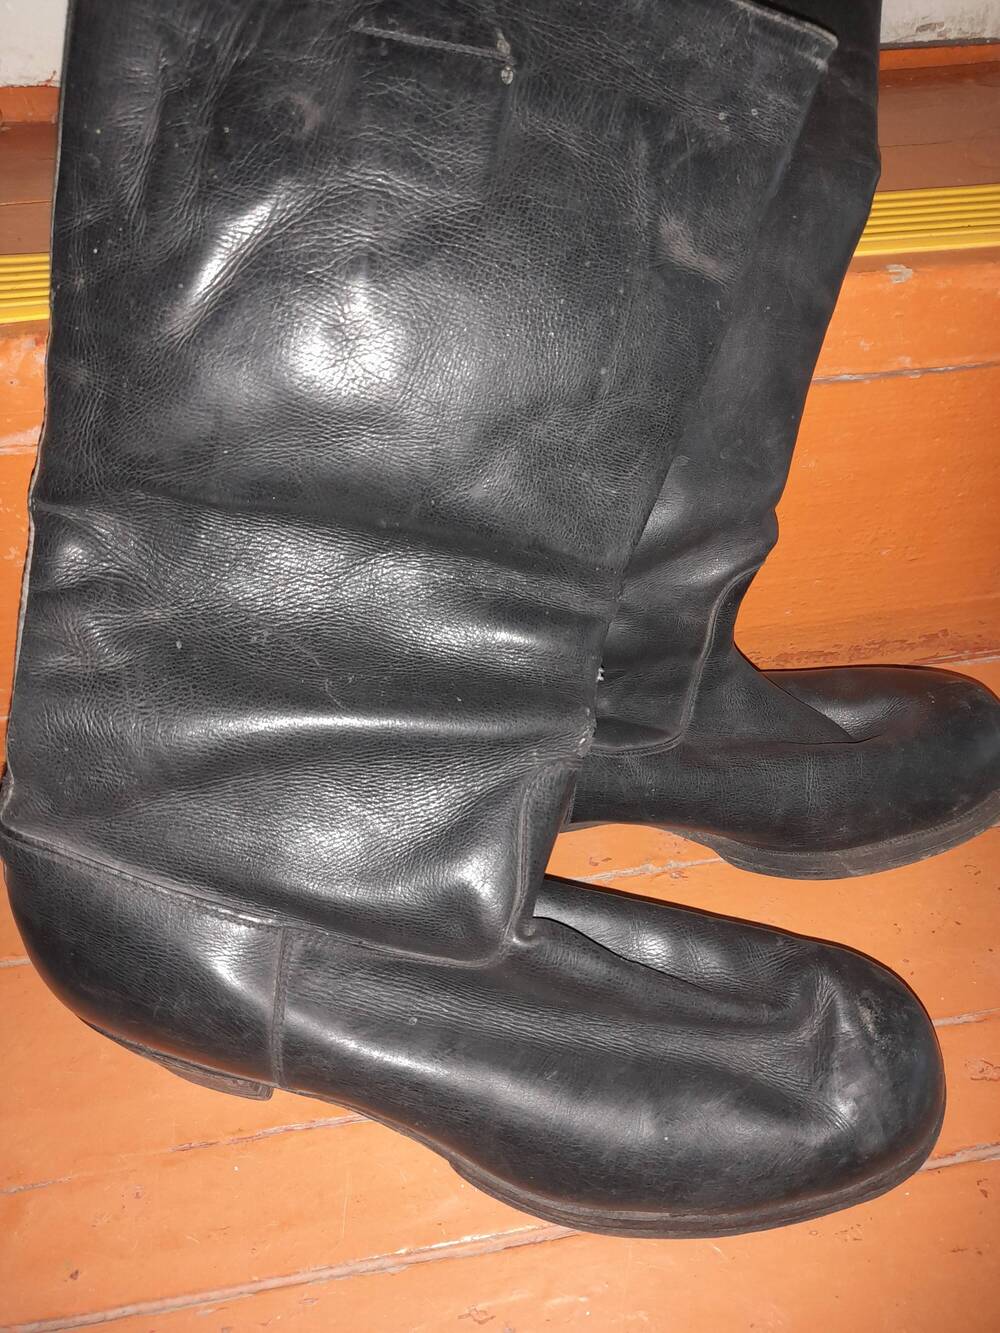 Сапоги армейские  кожаные на меху черного цвета. Голенища длинные, высота каблуков 3 см. На подошве имеется фабричный штамп на немецком языке.